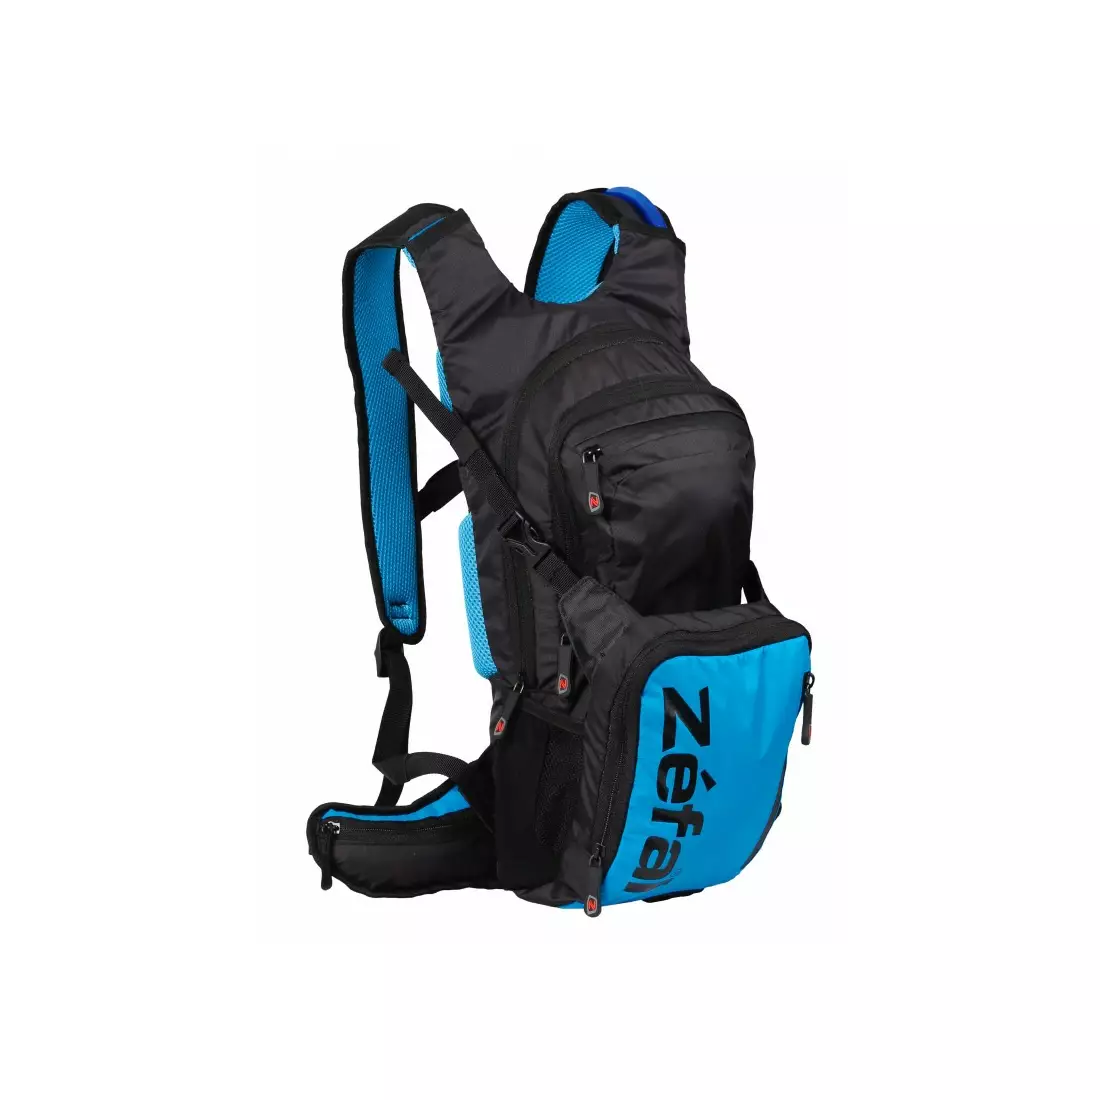 ZEFAL cyklistický batoh s hydro enduro vodním vakem černo-modrý ZF-7164